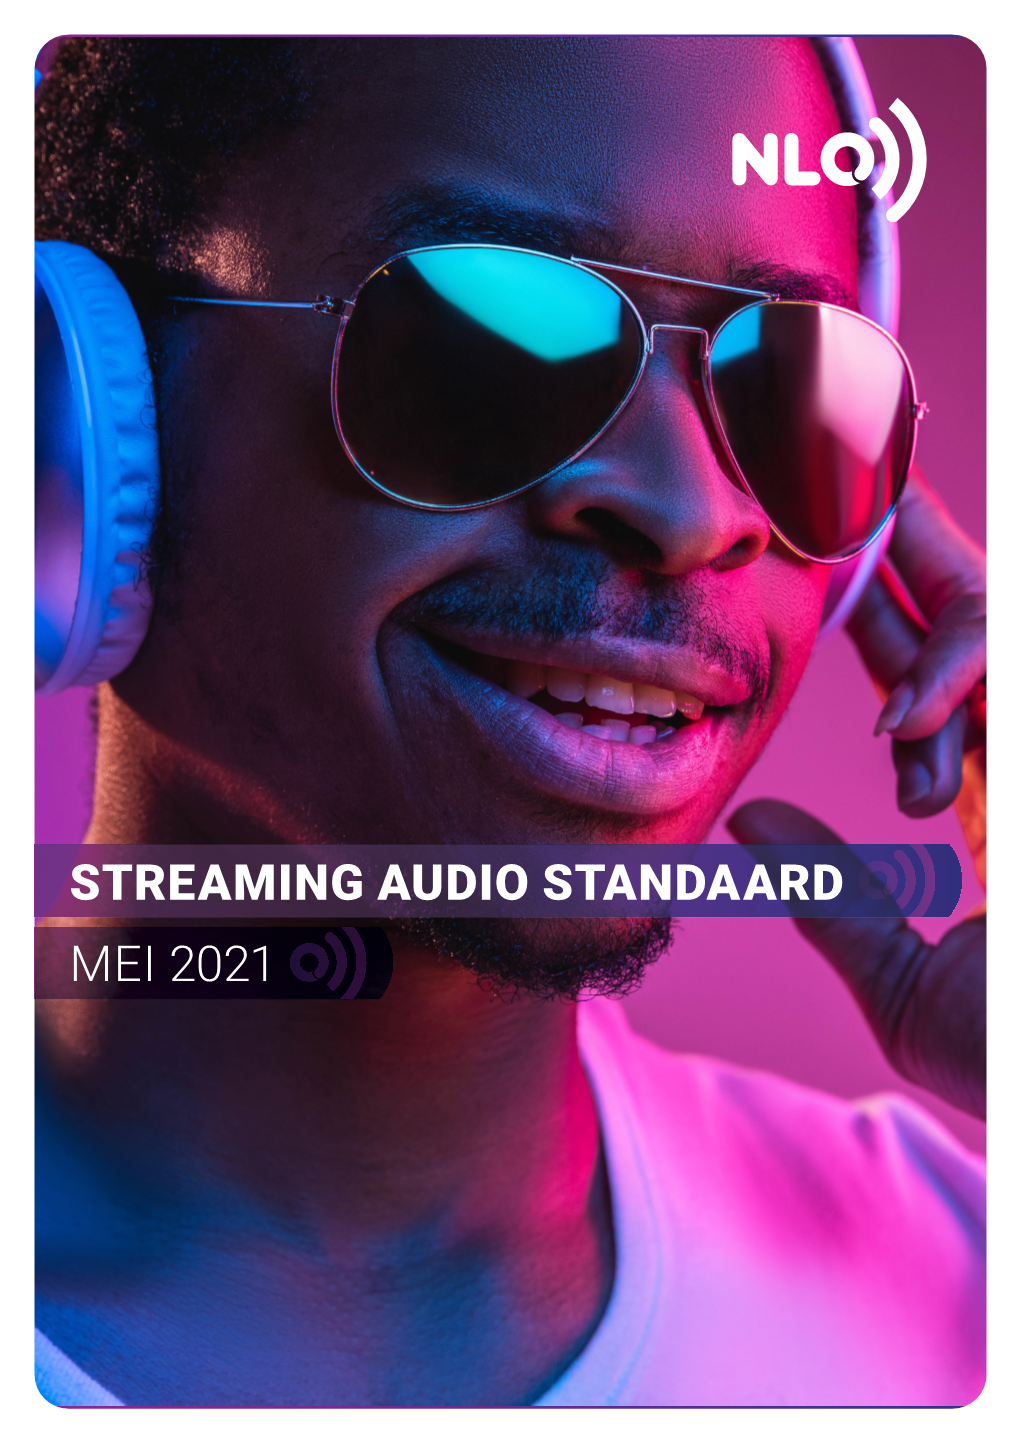 NLO Streaming Audio Standaard Vormt Dan Ook Niet De Currency, Zoals Het Nationaal Luister Onderzoek Wel Biedt